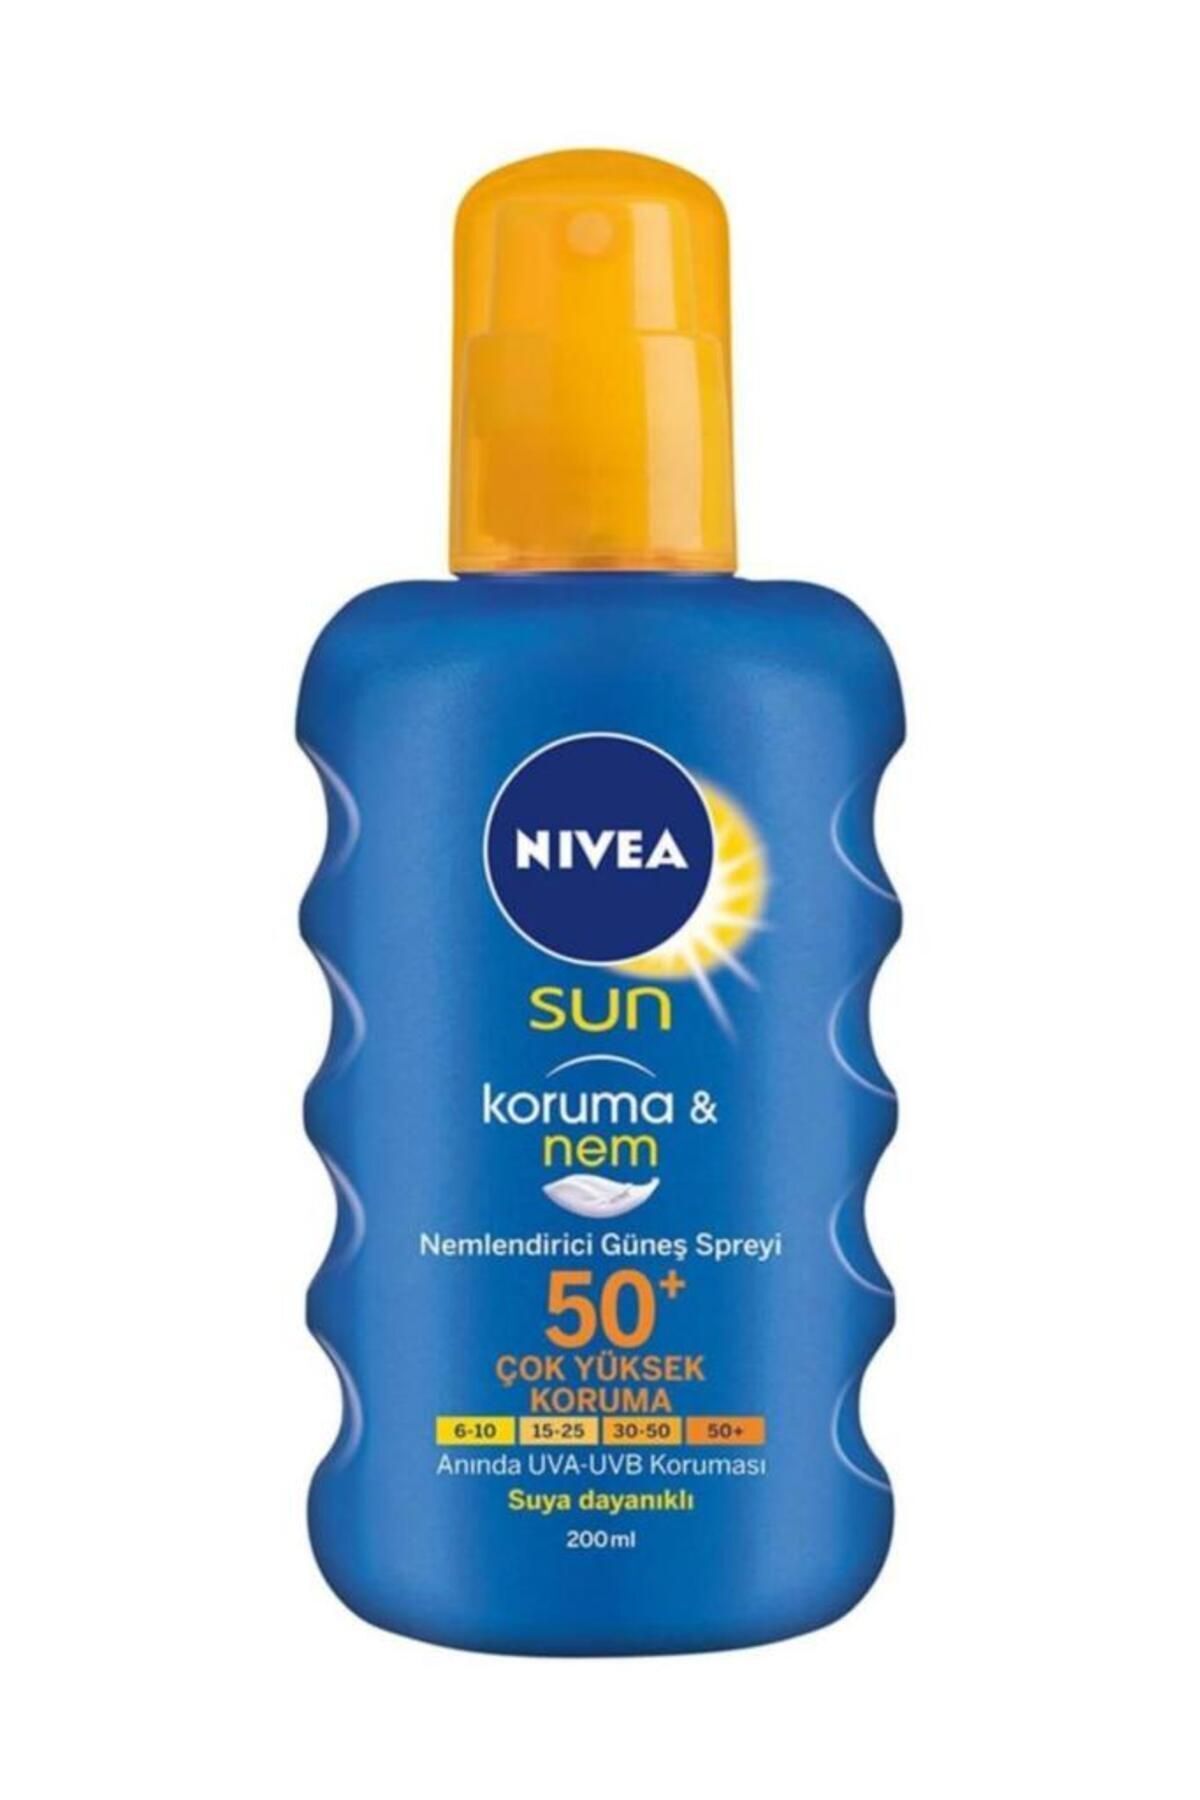 NIVEA Sun Koruma & Nem Güneş Spreyi 50 Gkf 200 ml